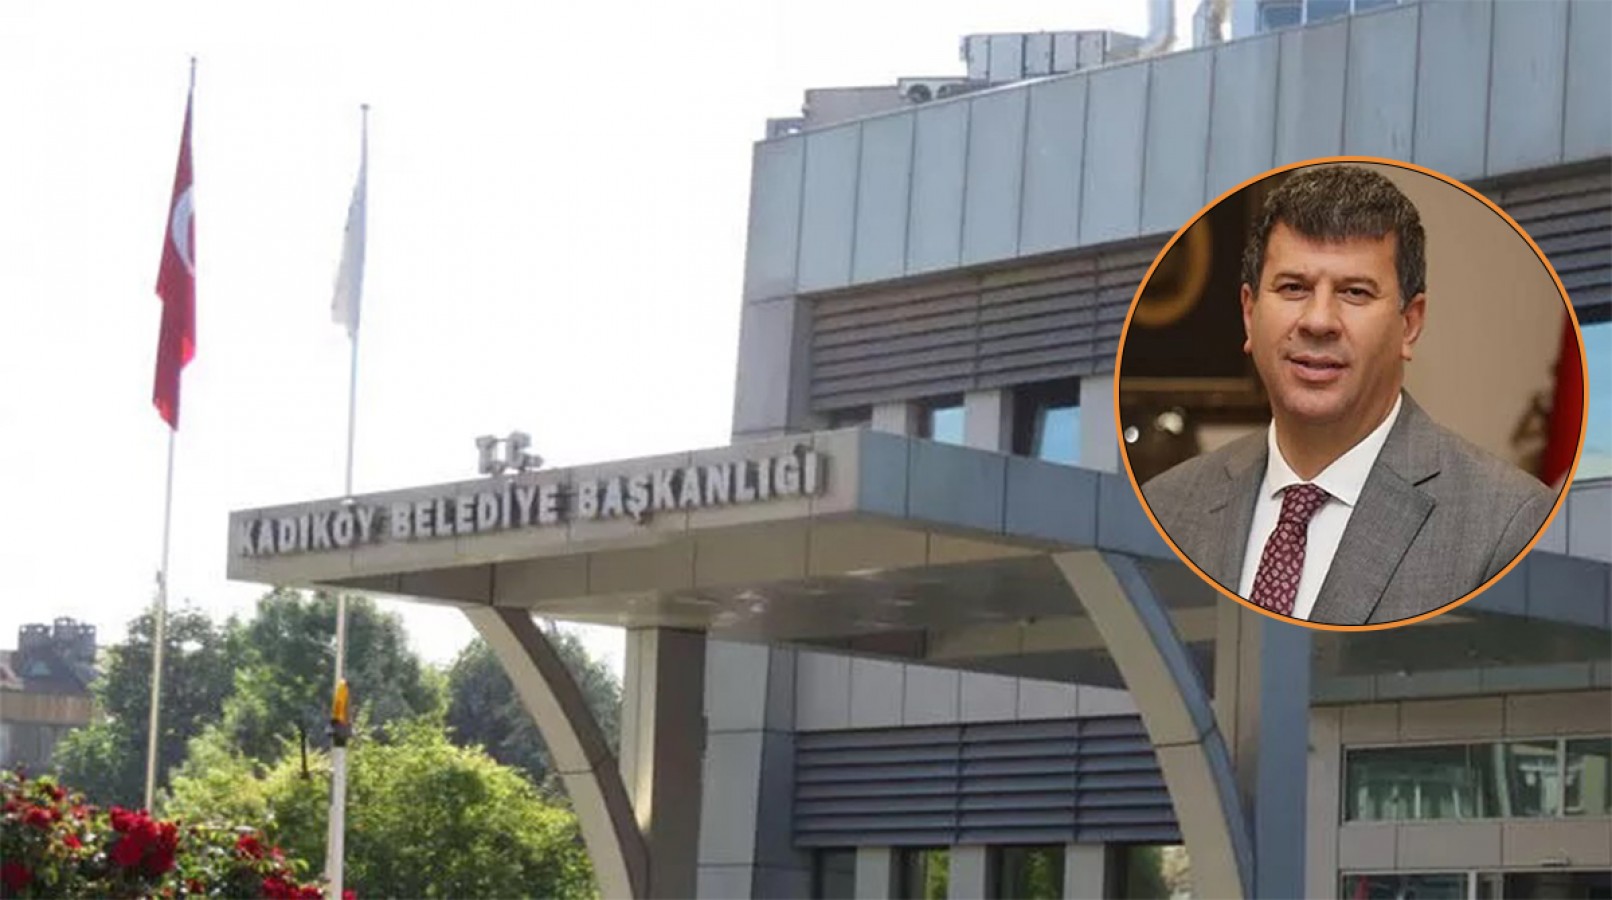 Kadıköy Belediyesi'nin Urfalı başkanına haciz şoku!;